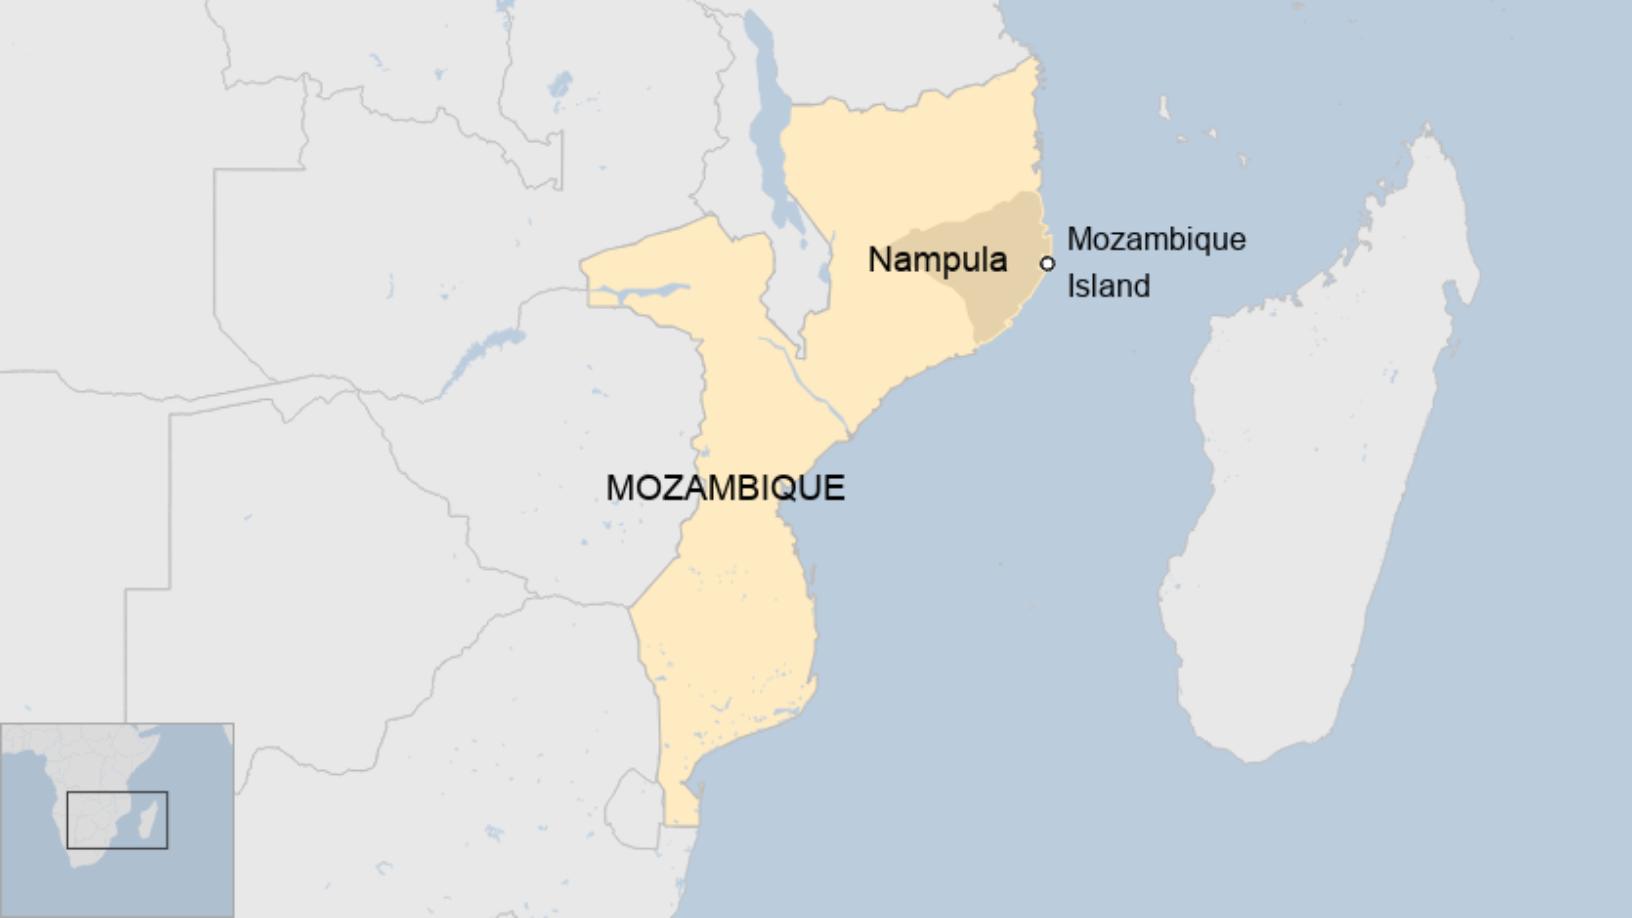 Біля узбережжя Мозамбіку затонув пором та загинули люди